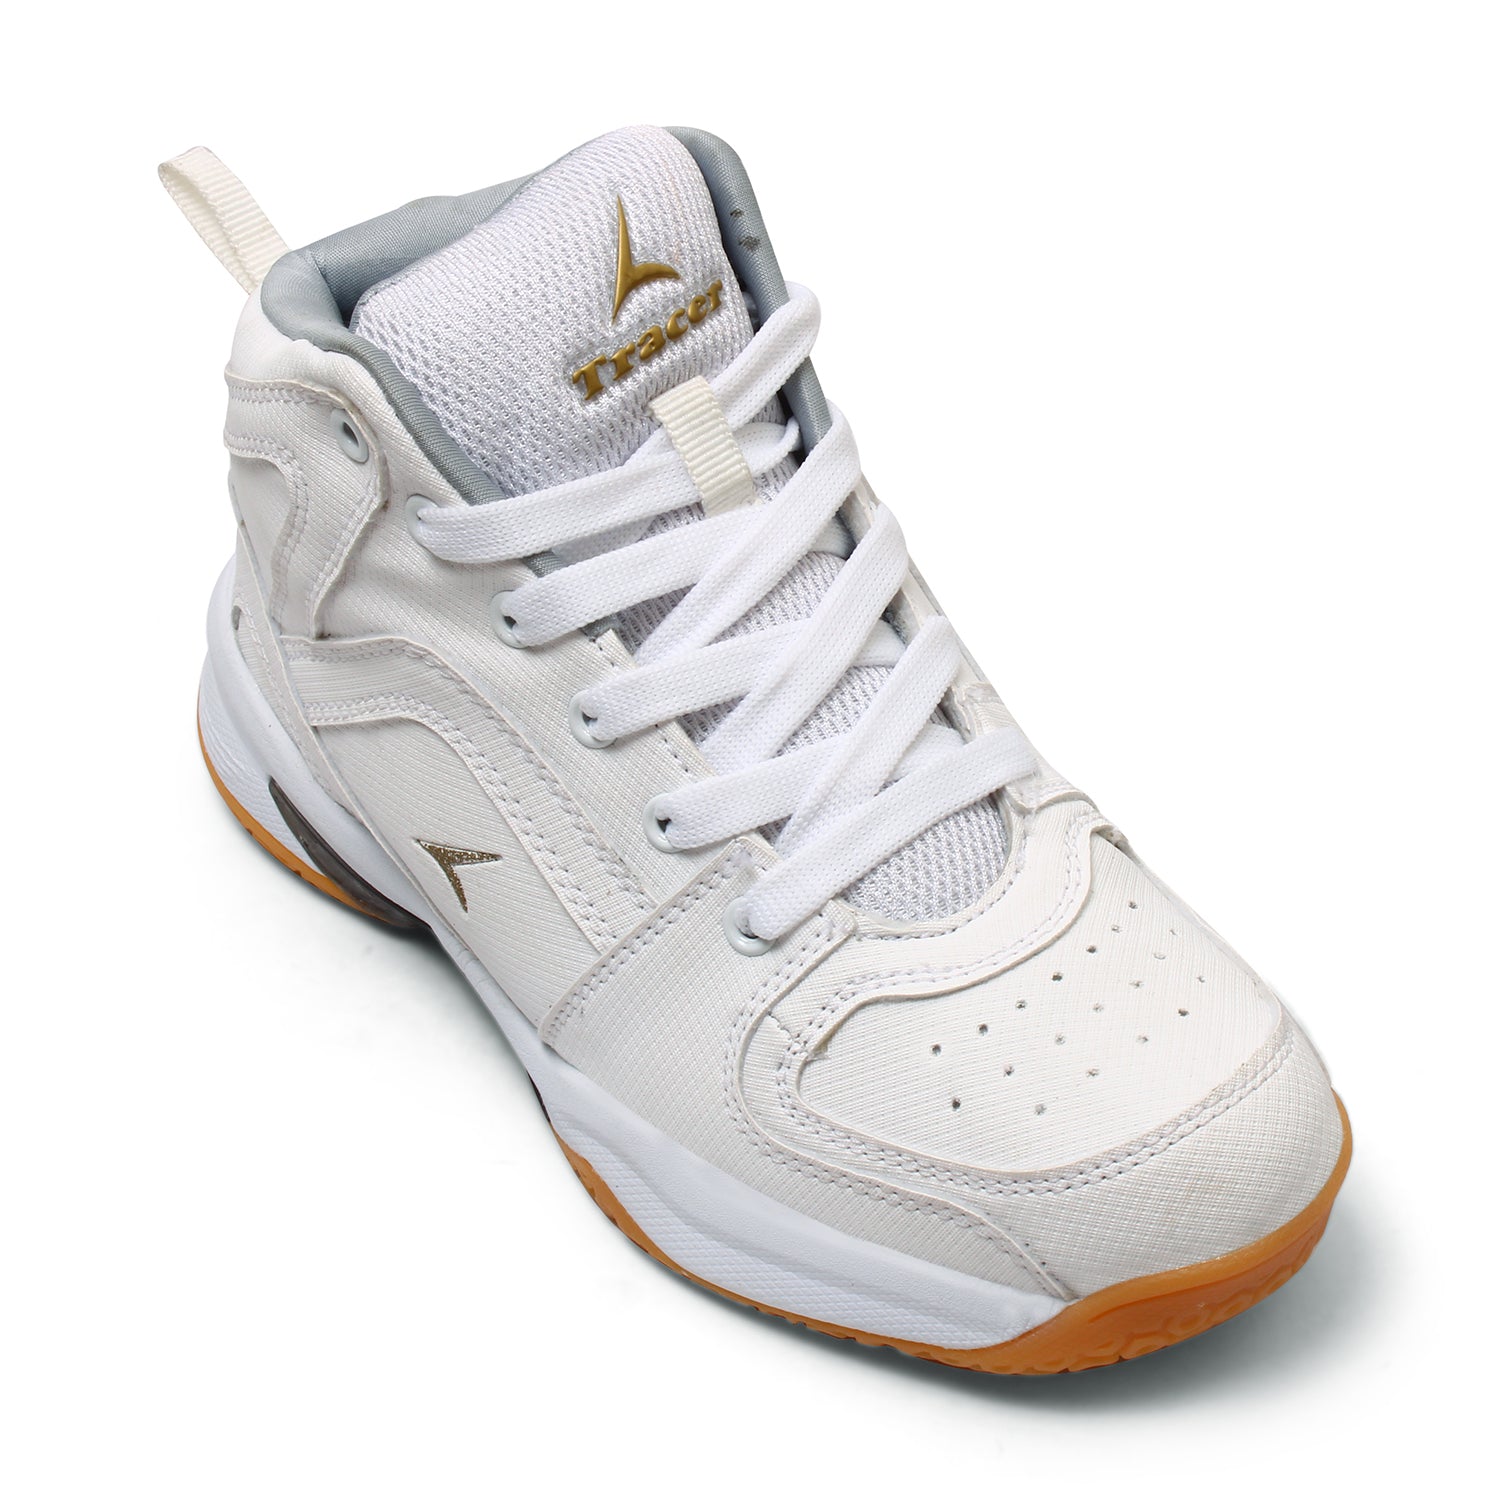 Tracer Jumpstart 1705 Basketball Sports Shoe for Kid's White